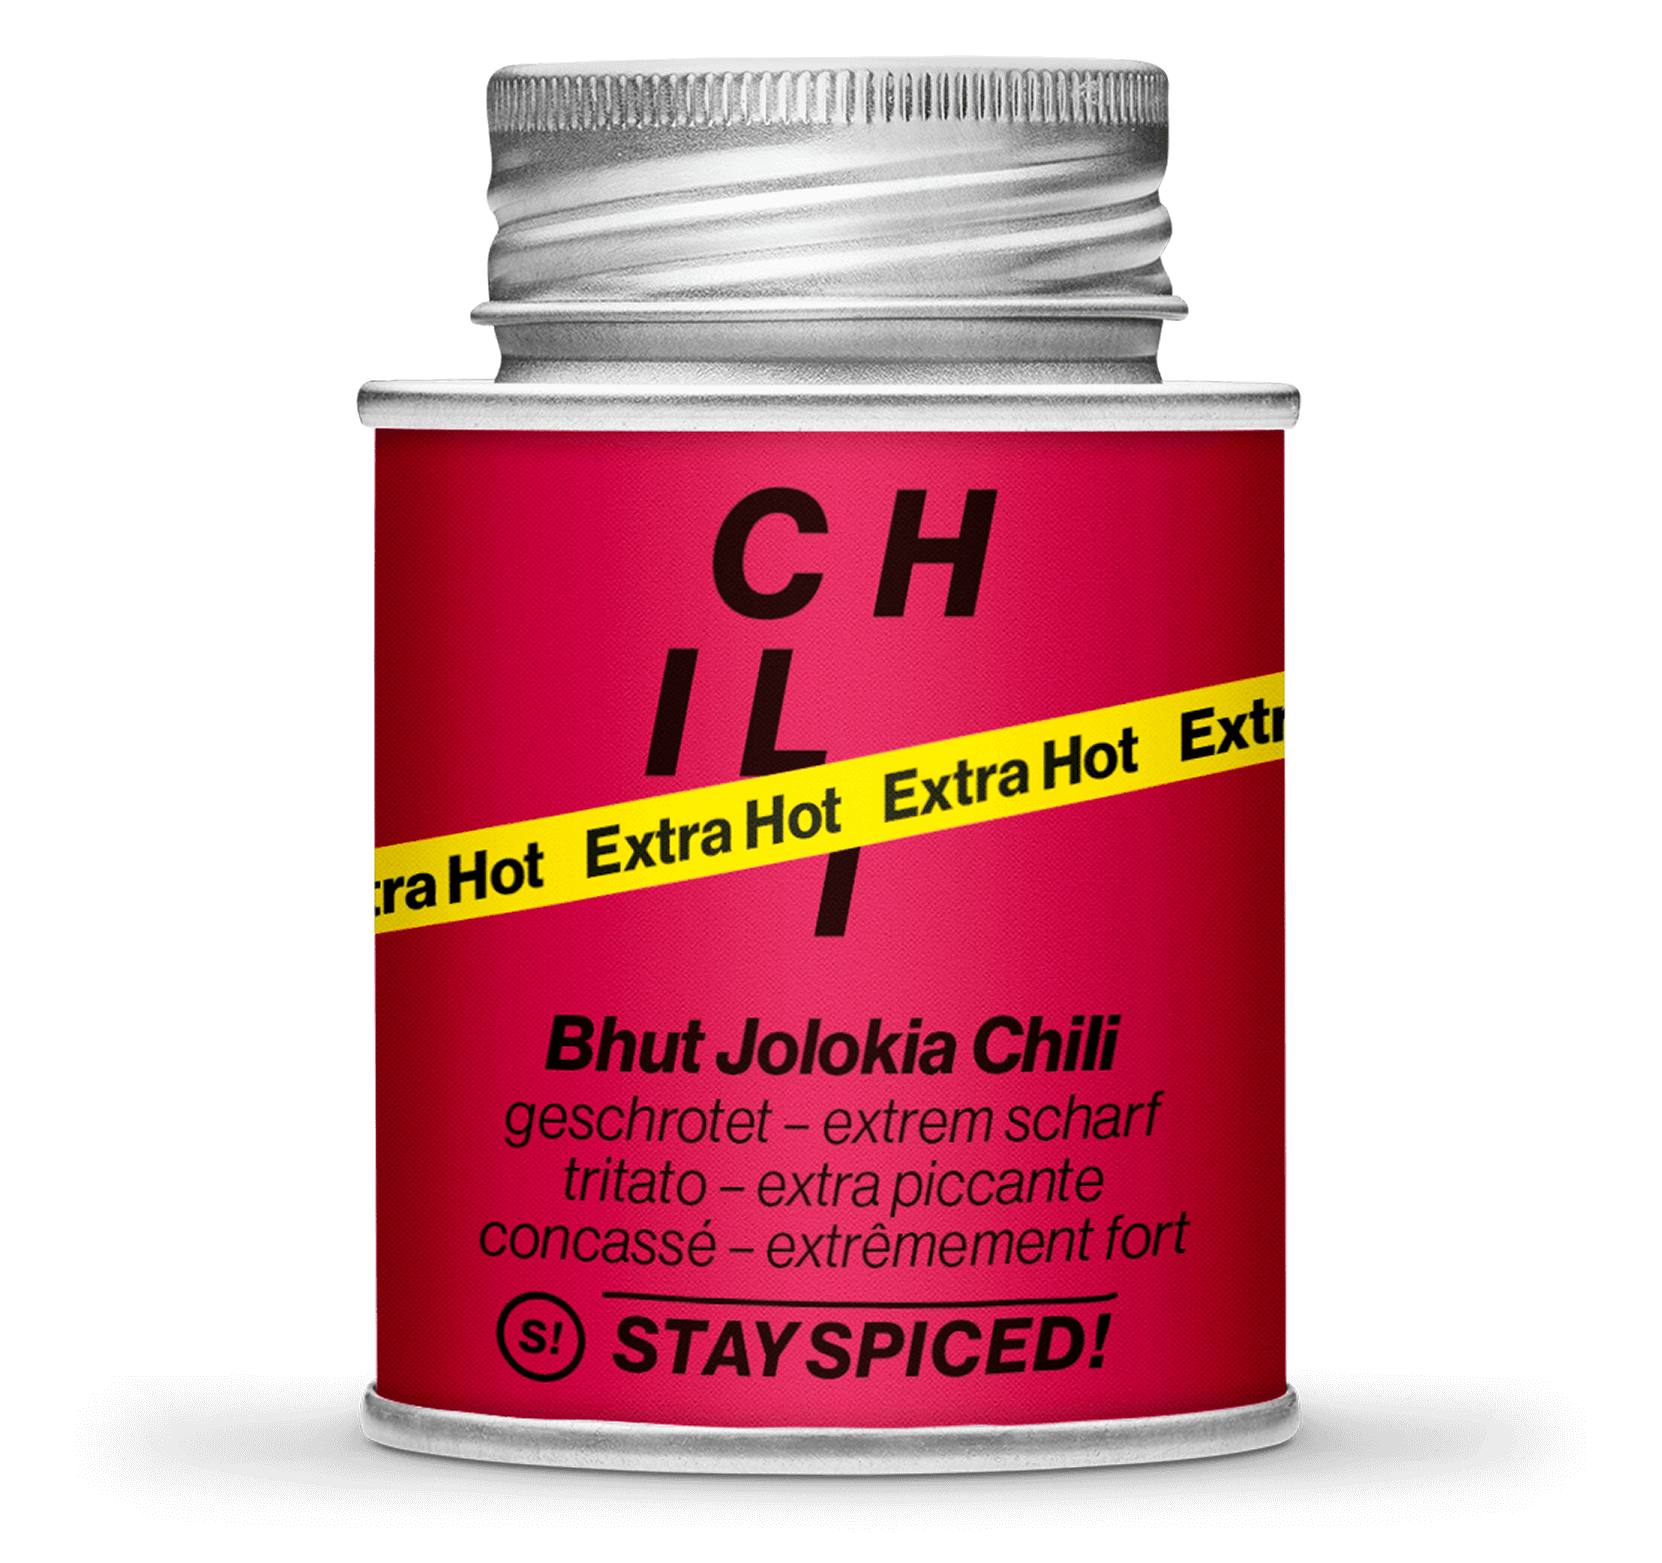 Bhut Jolokia Chili - geschrotet 1-3 mm, extra scharf, 170ml Schraubdose